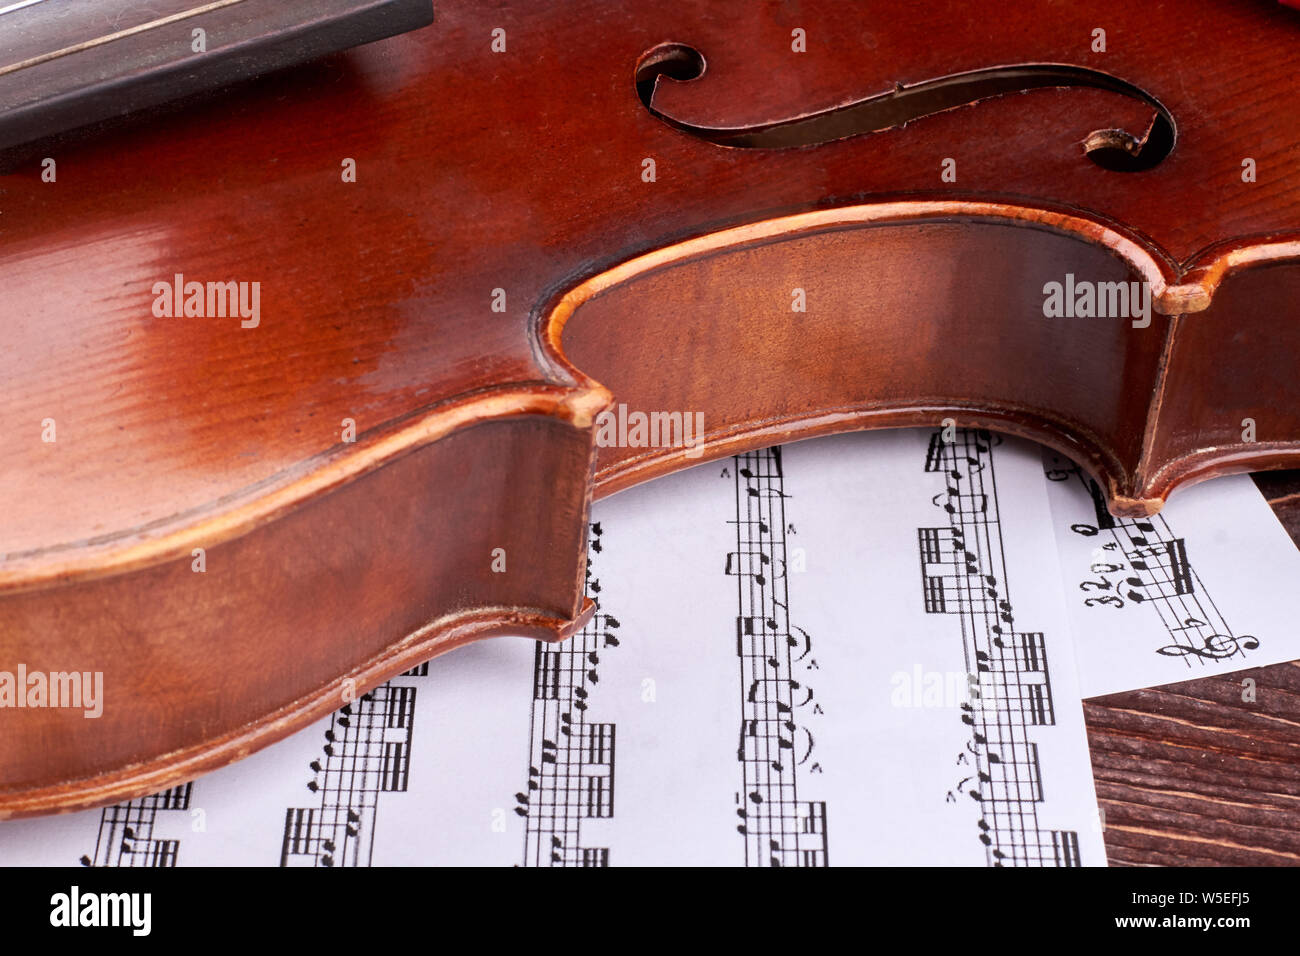 Gros plan sur le violon brun et les notes de musique. Banque D'Images